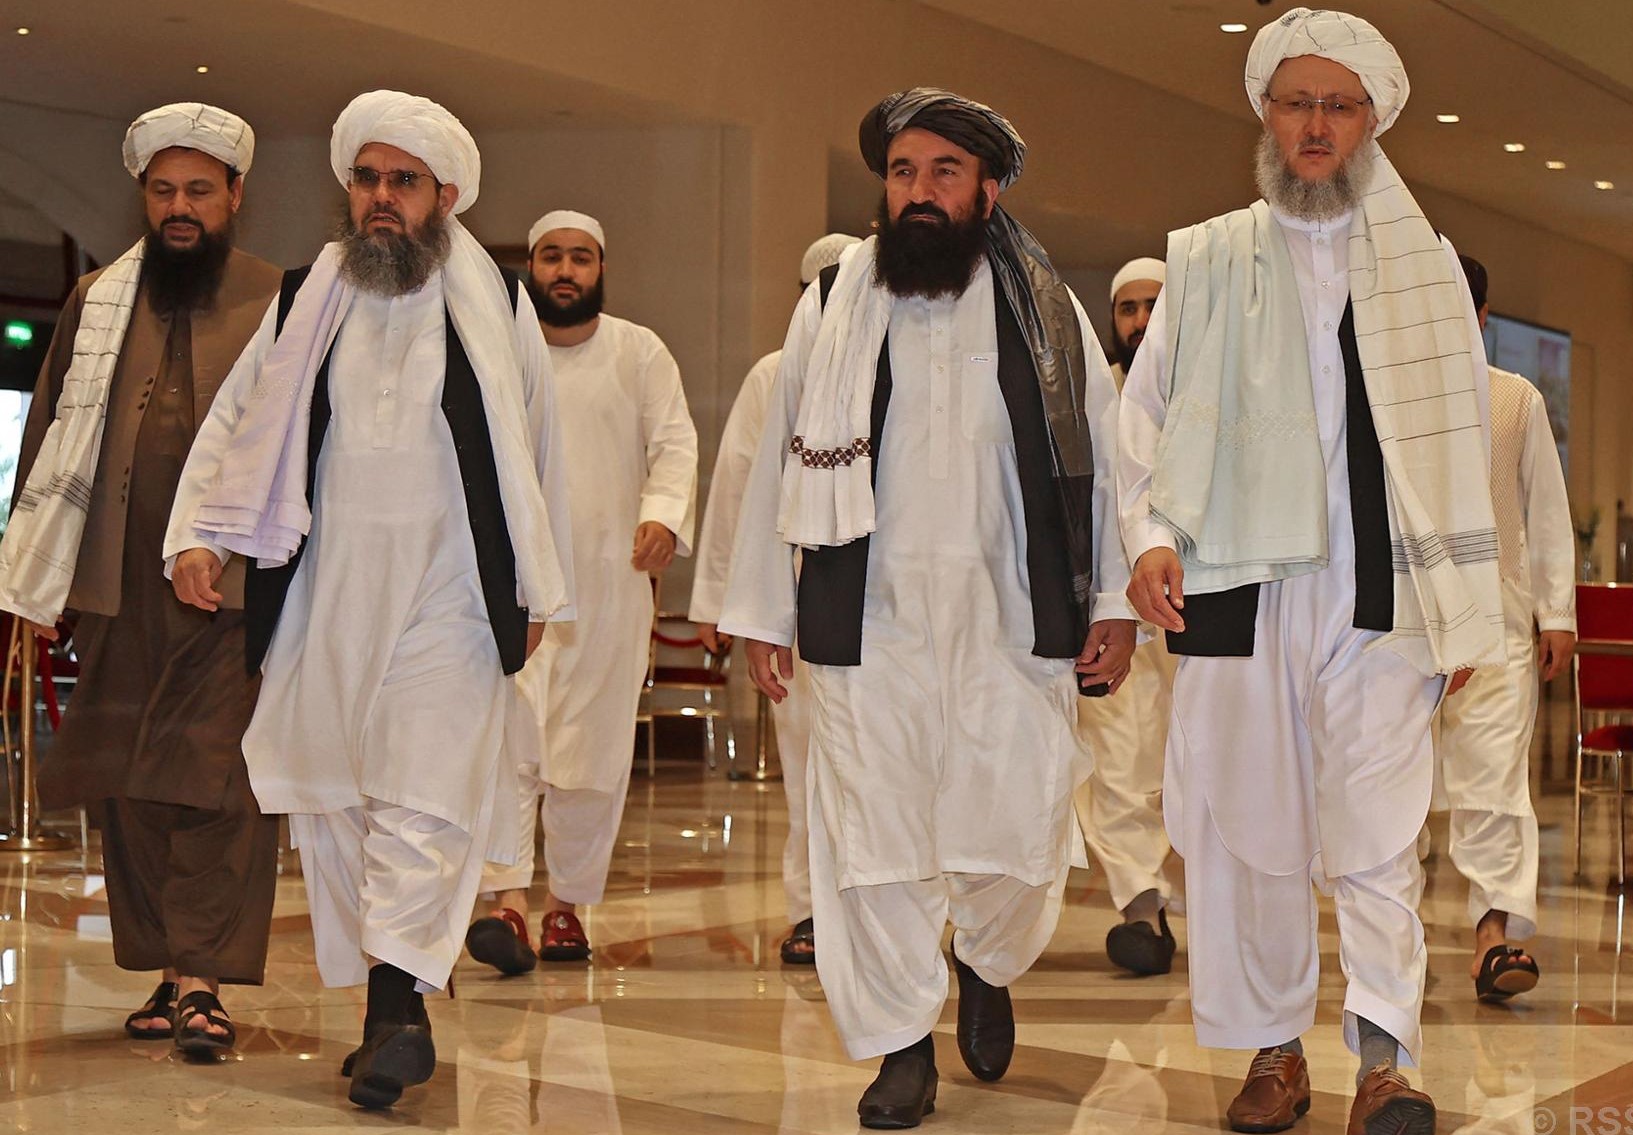 तालिबानद्वारा संयुक्त राष्ट्रसंघको प्रतिवेदन अस्वीकार